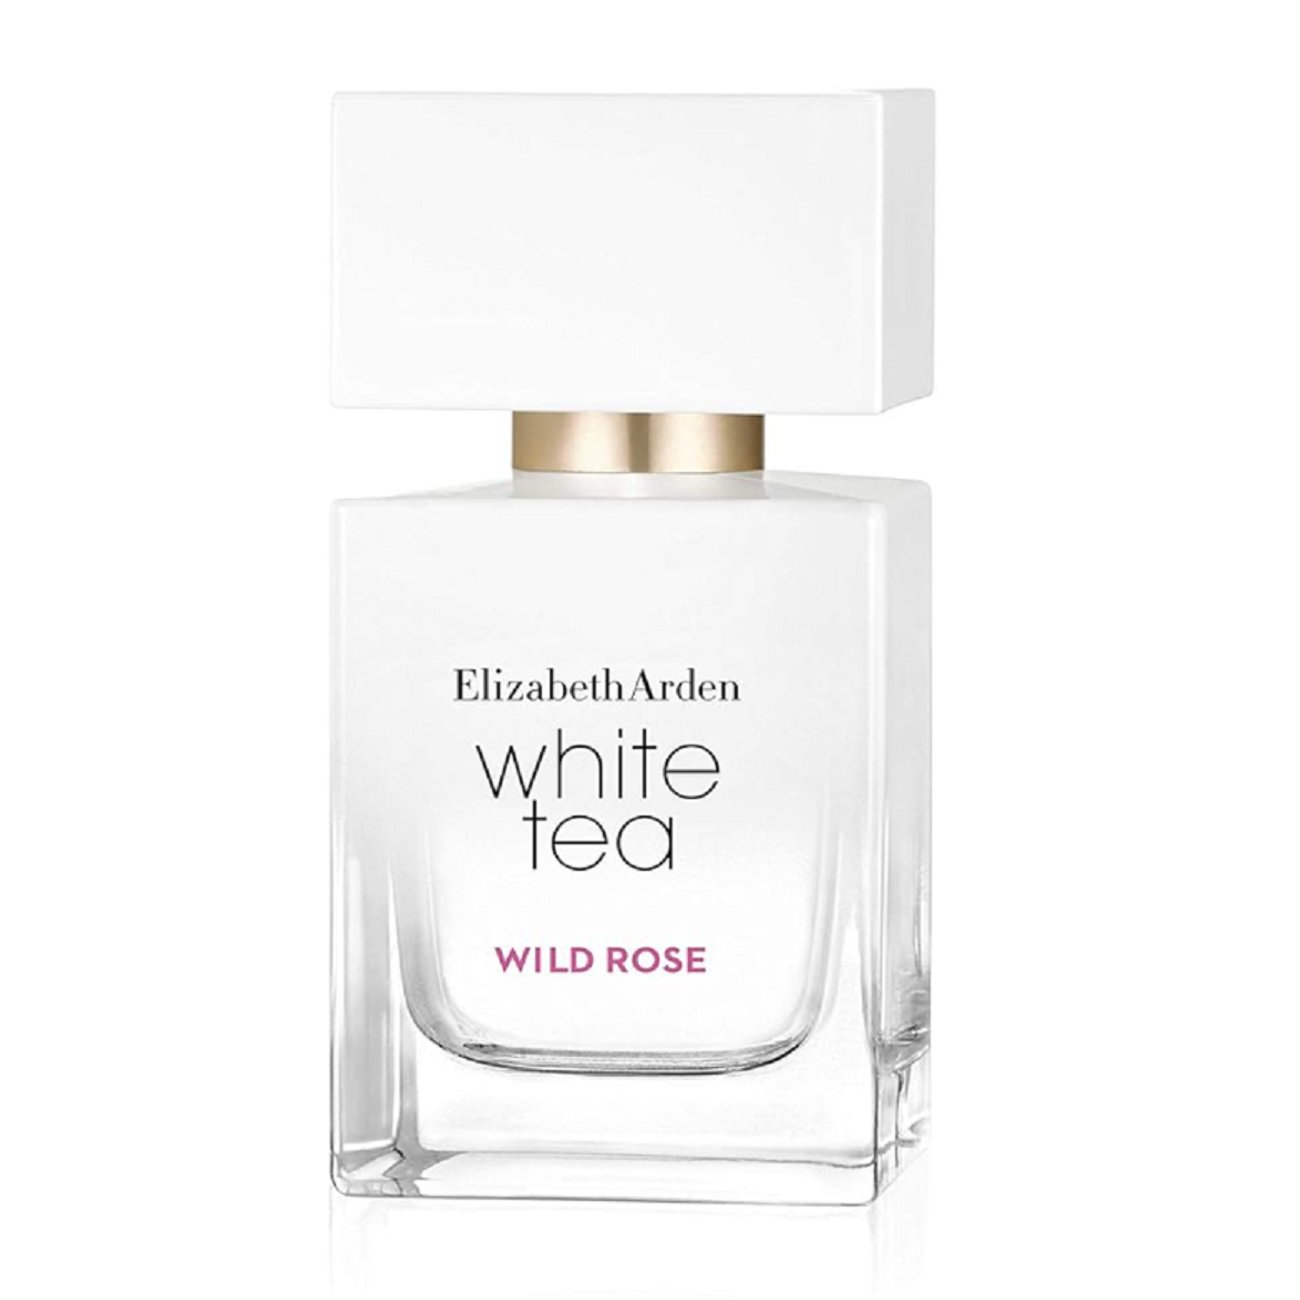 Elizabeth Arden - White Tea Wild Rose